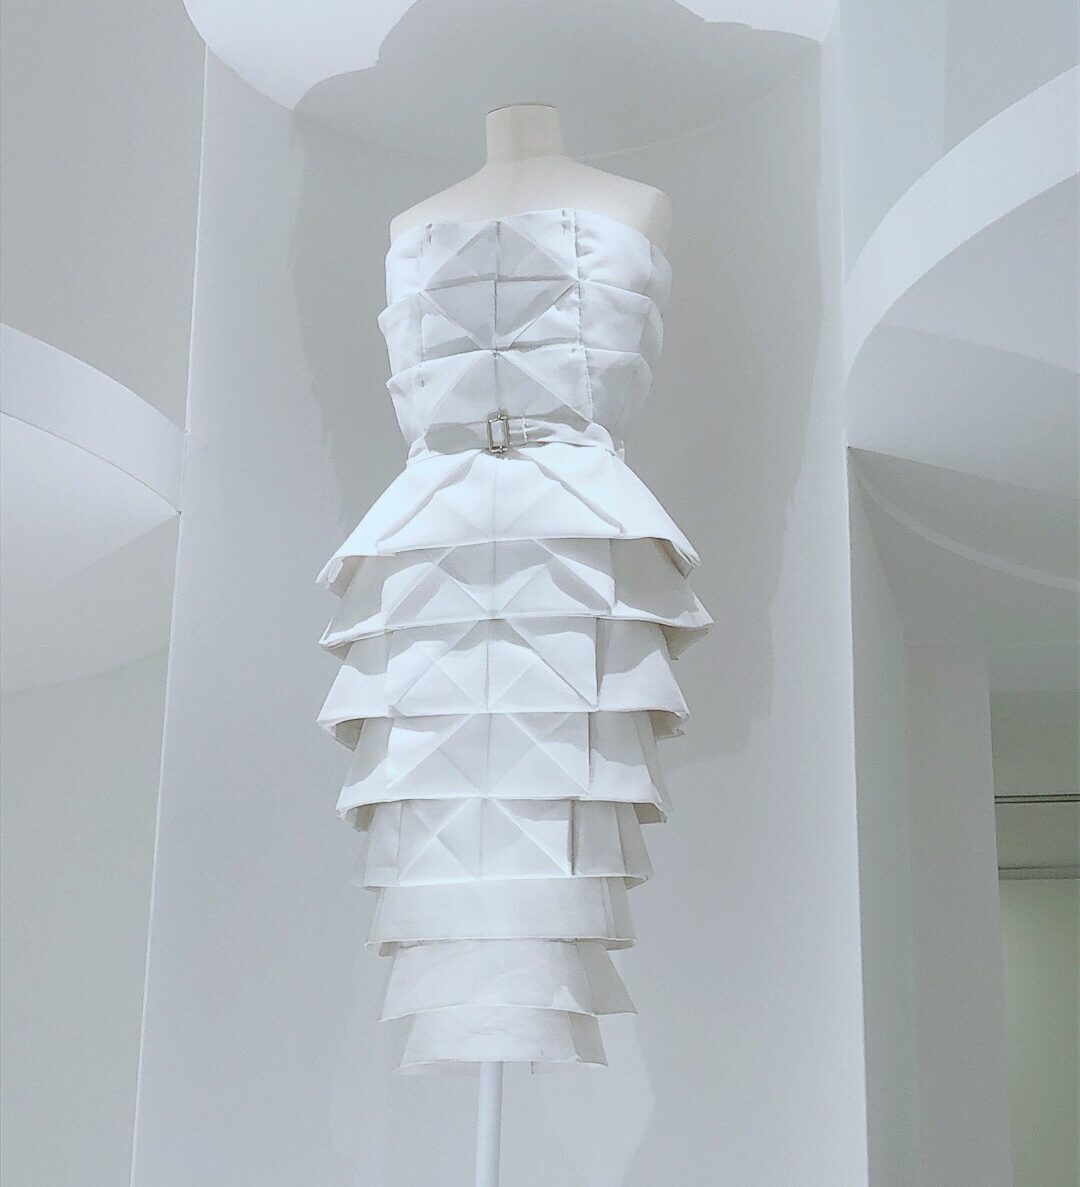 ディオール展、ドレスのシルエットやラインを確認するための「トワレ」。折り紙の要素を取り入れたデザインのタイトなドレス。規則的に並んだ三角形が目を惹く。